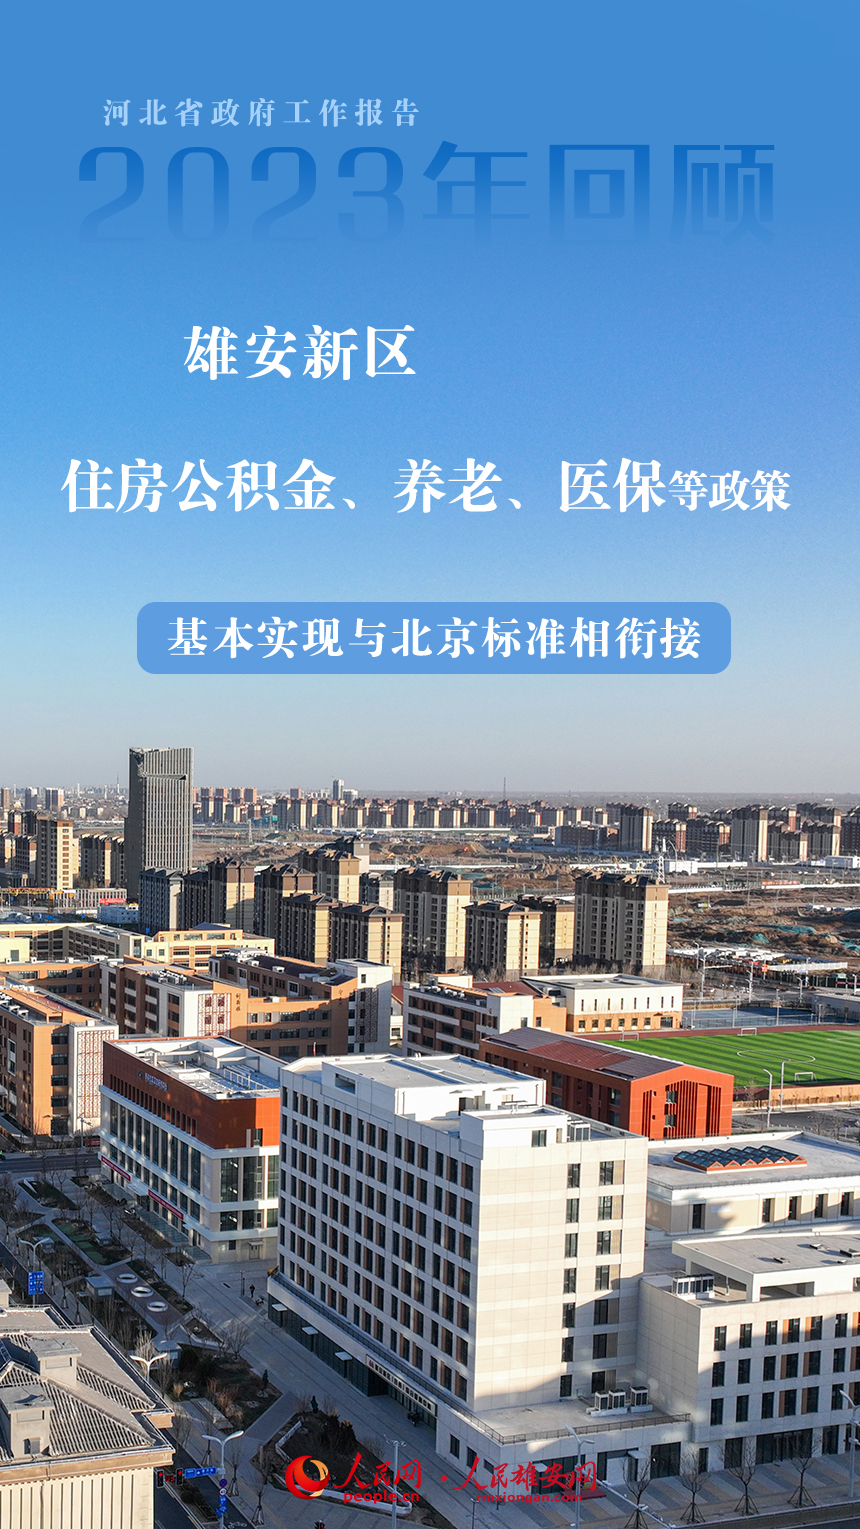 11張海報呈現河北省政府工作報告中的雄安